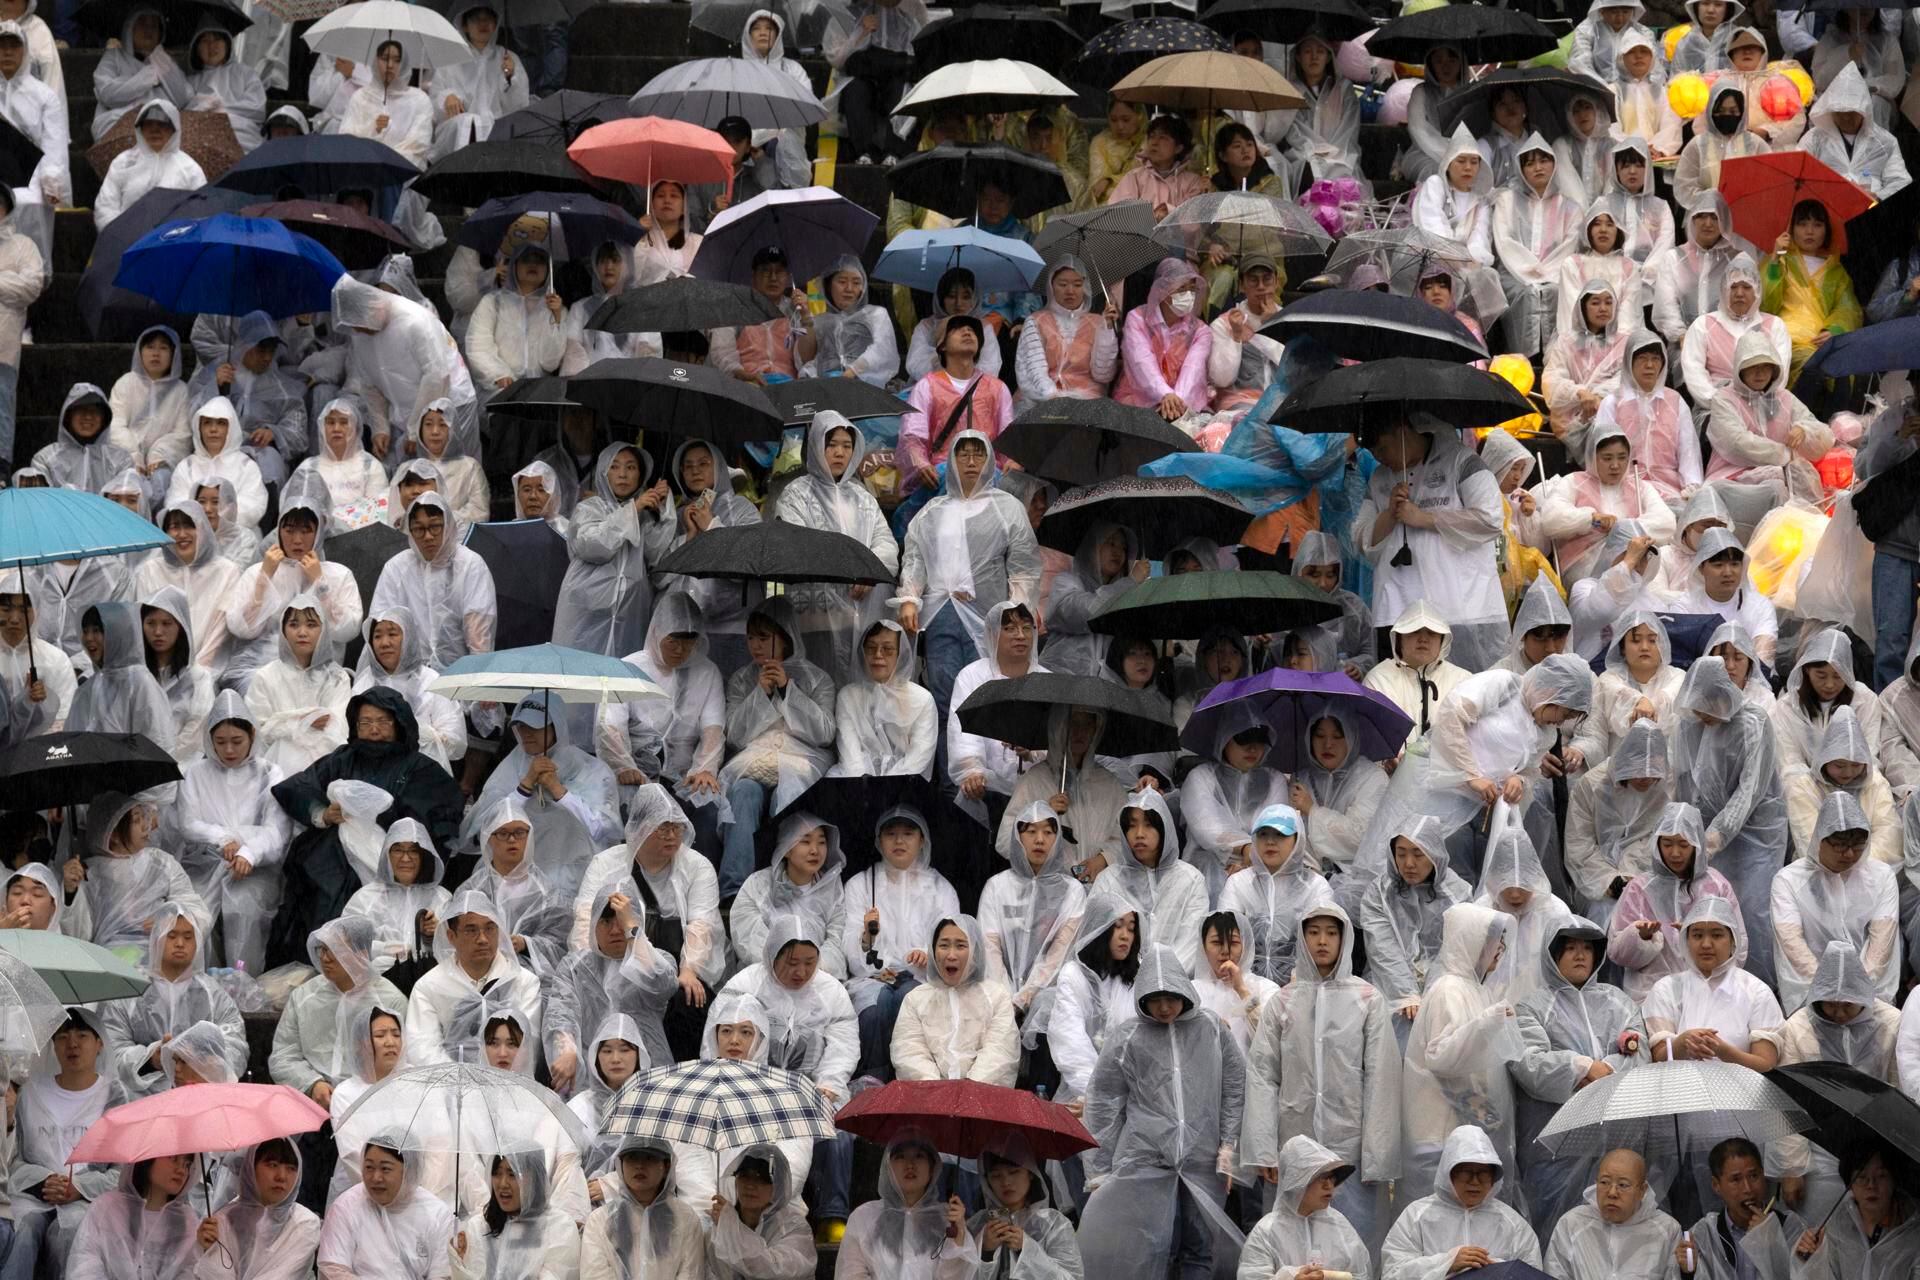 Las personas se congregan para celebrar y participar del desfile de los faroles de Loto en Seúl. (Corea del Sur, Seúl) EFE/EPA/JEON HEON-KYUN